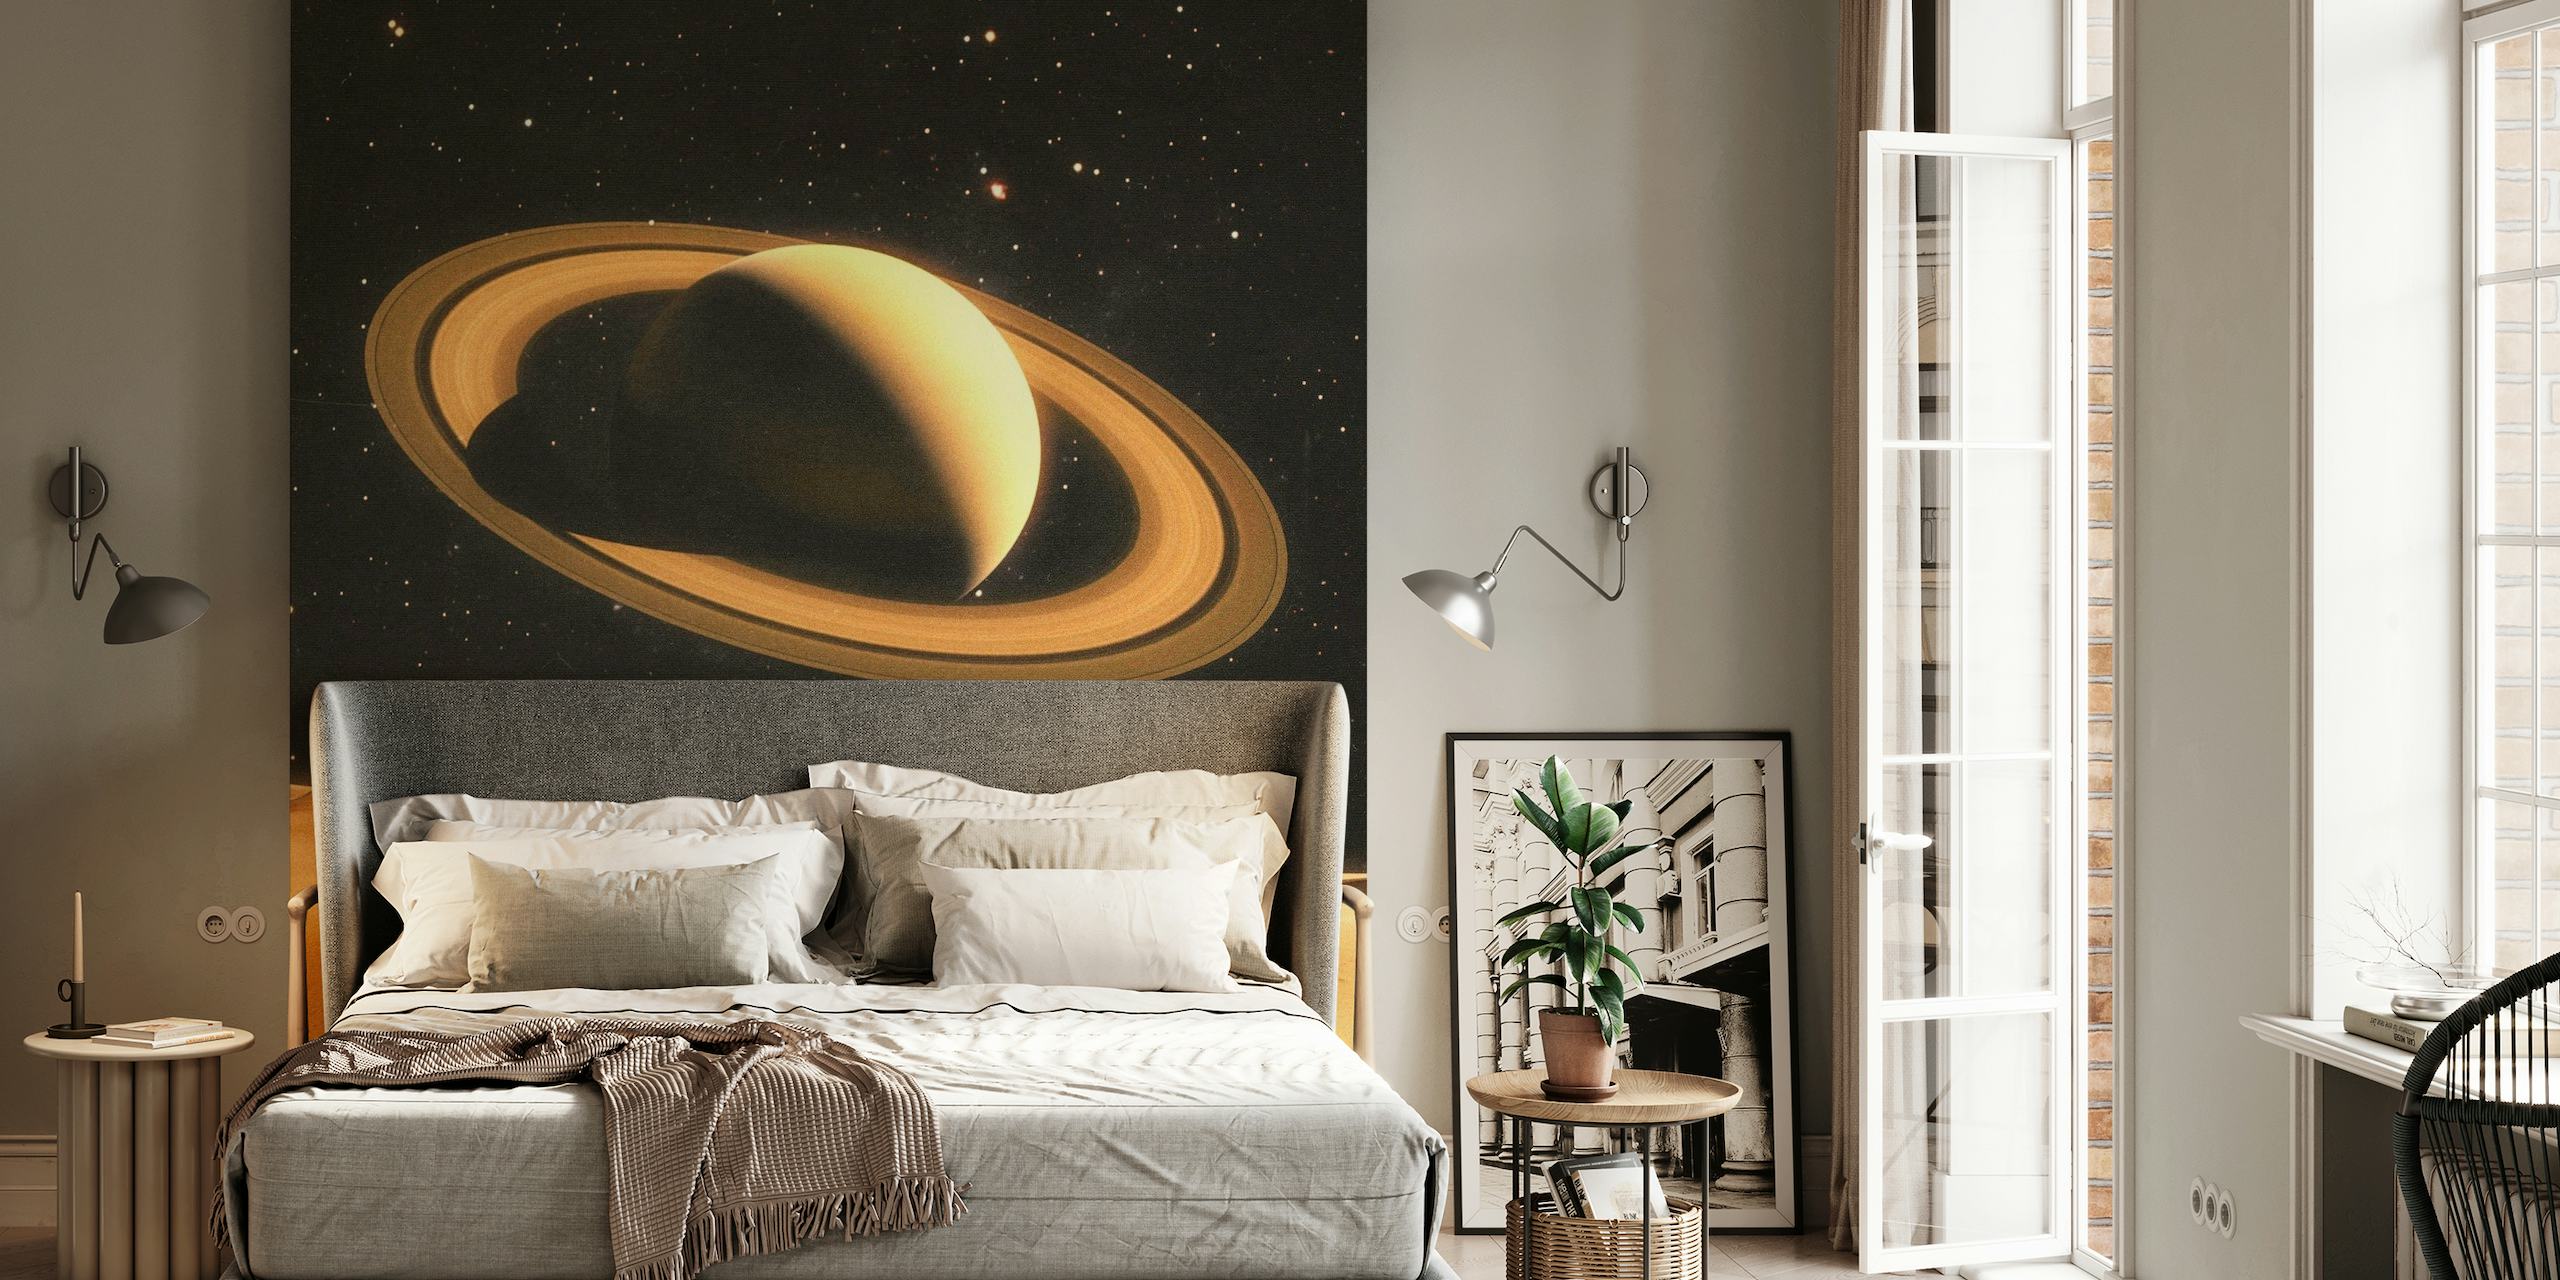 Fototapeta dvou lidí na planetě podobné poušti se Saturnem v pozadí